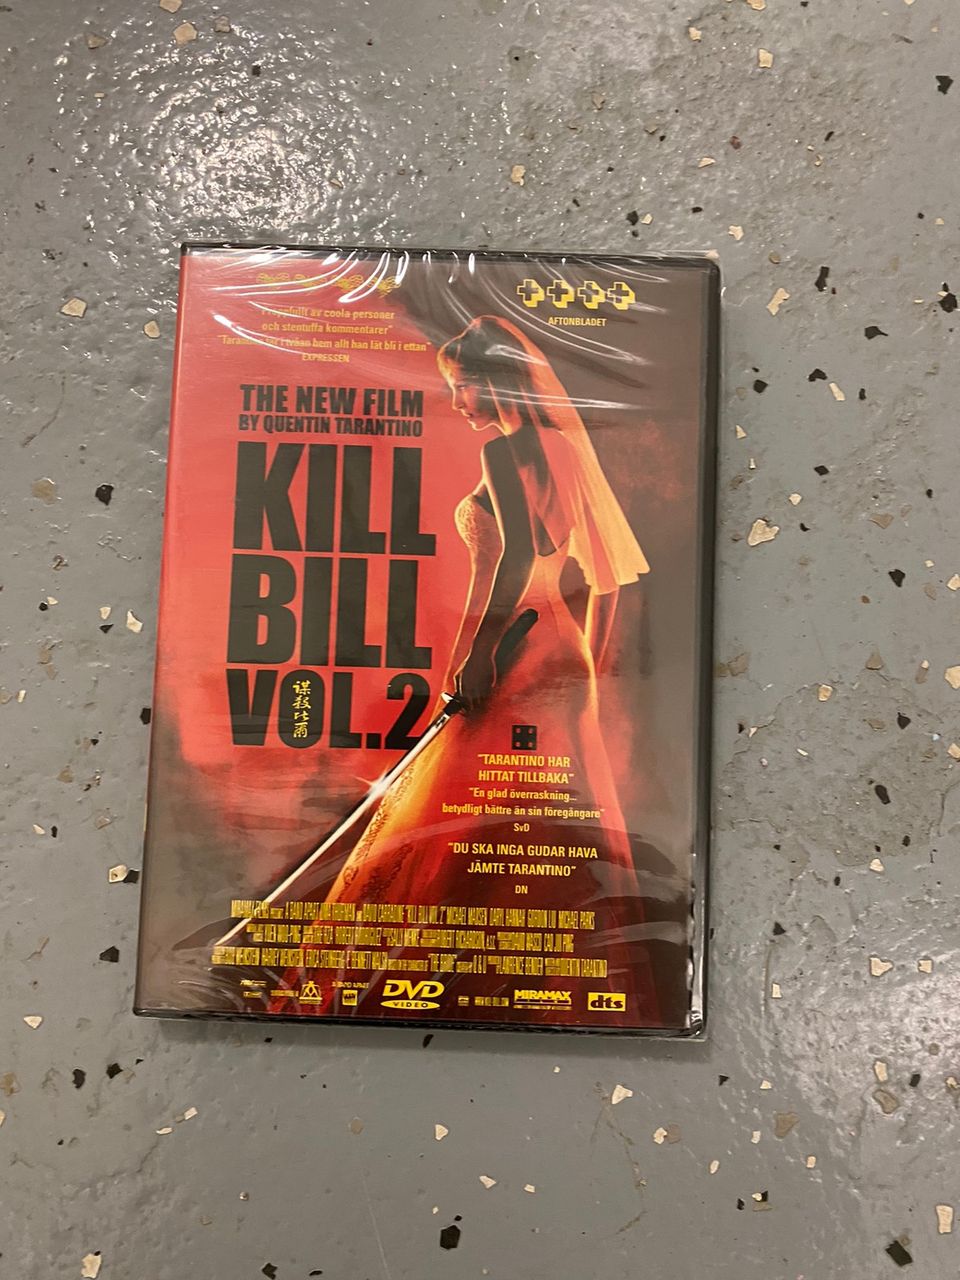 Kill bill vol 2 dvd